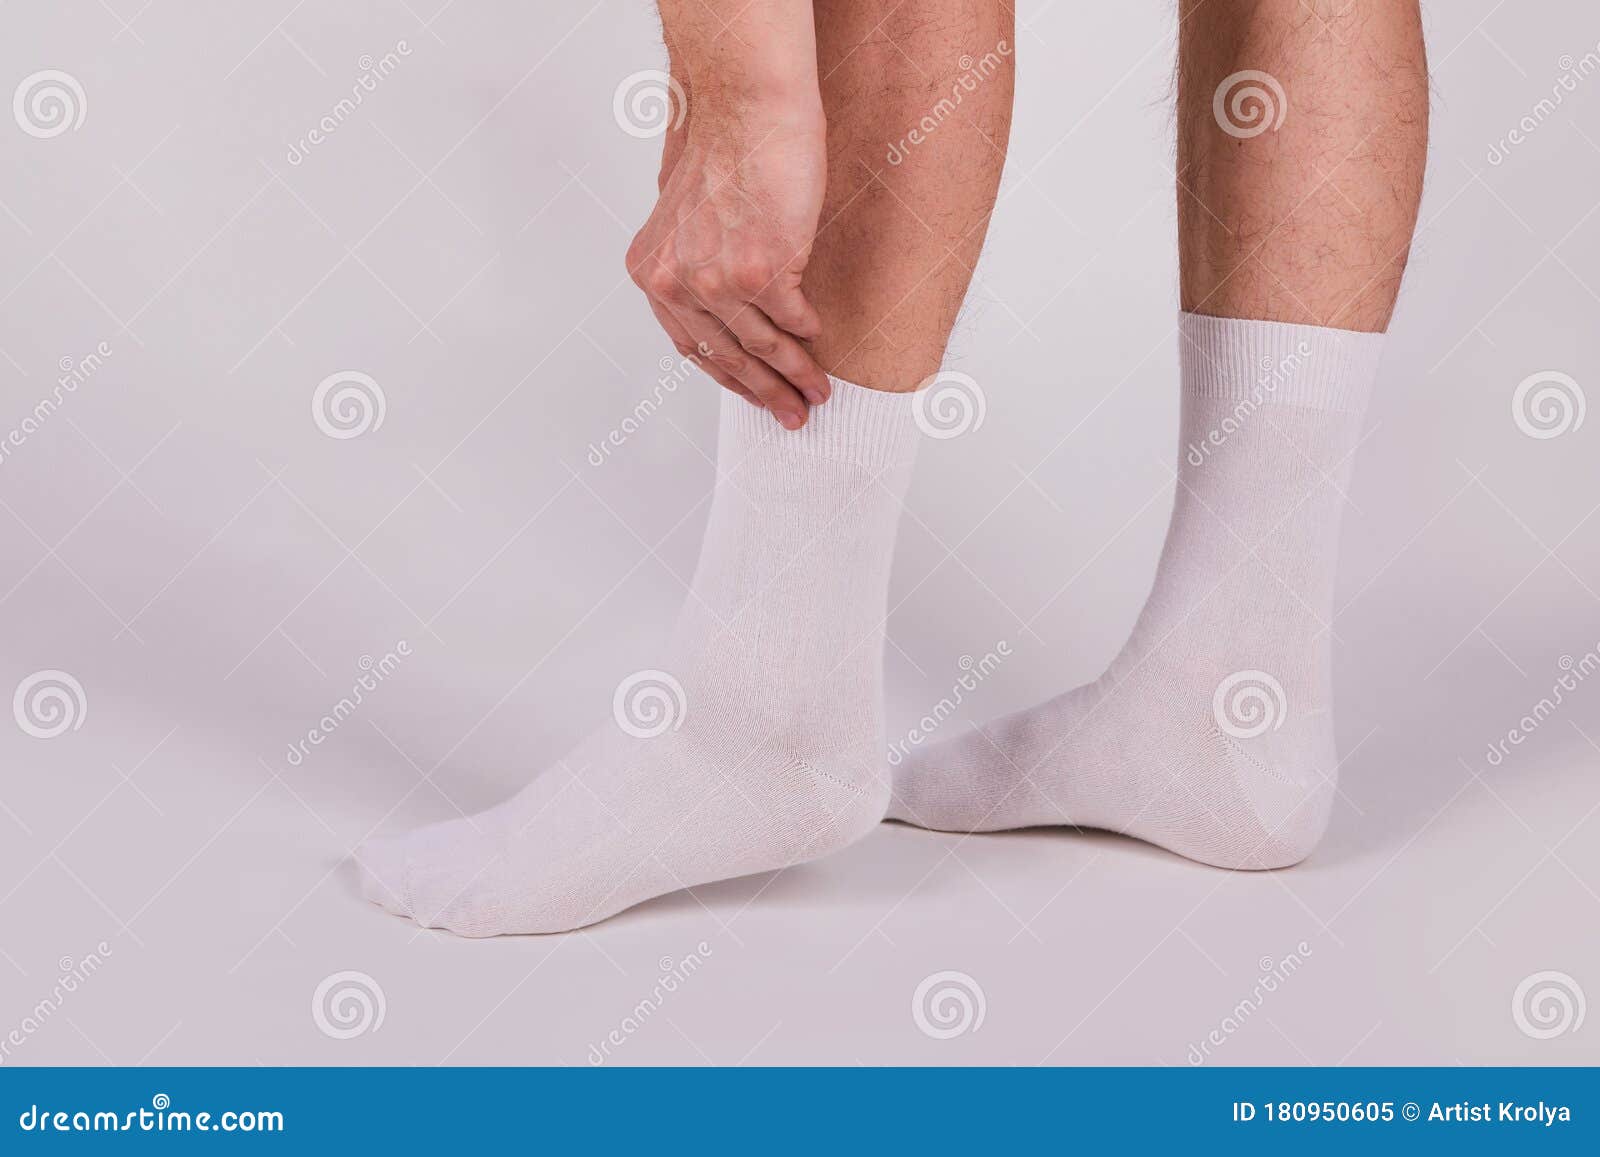 Hombre Con Calcetines Blancos De Algodón Nuevos En Un Fondo Blanco. Imagen  de archivo - Imagen de detallado, zapato: 180950605